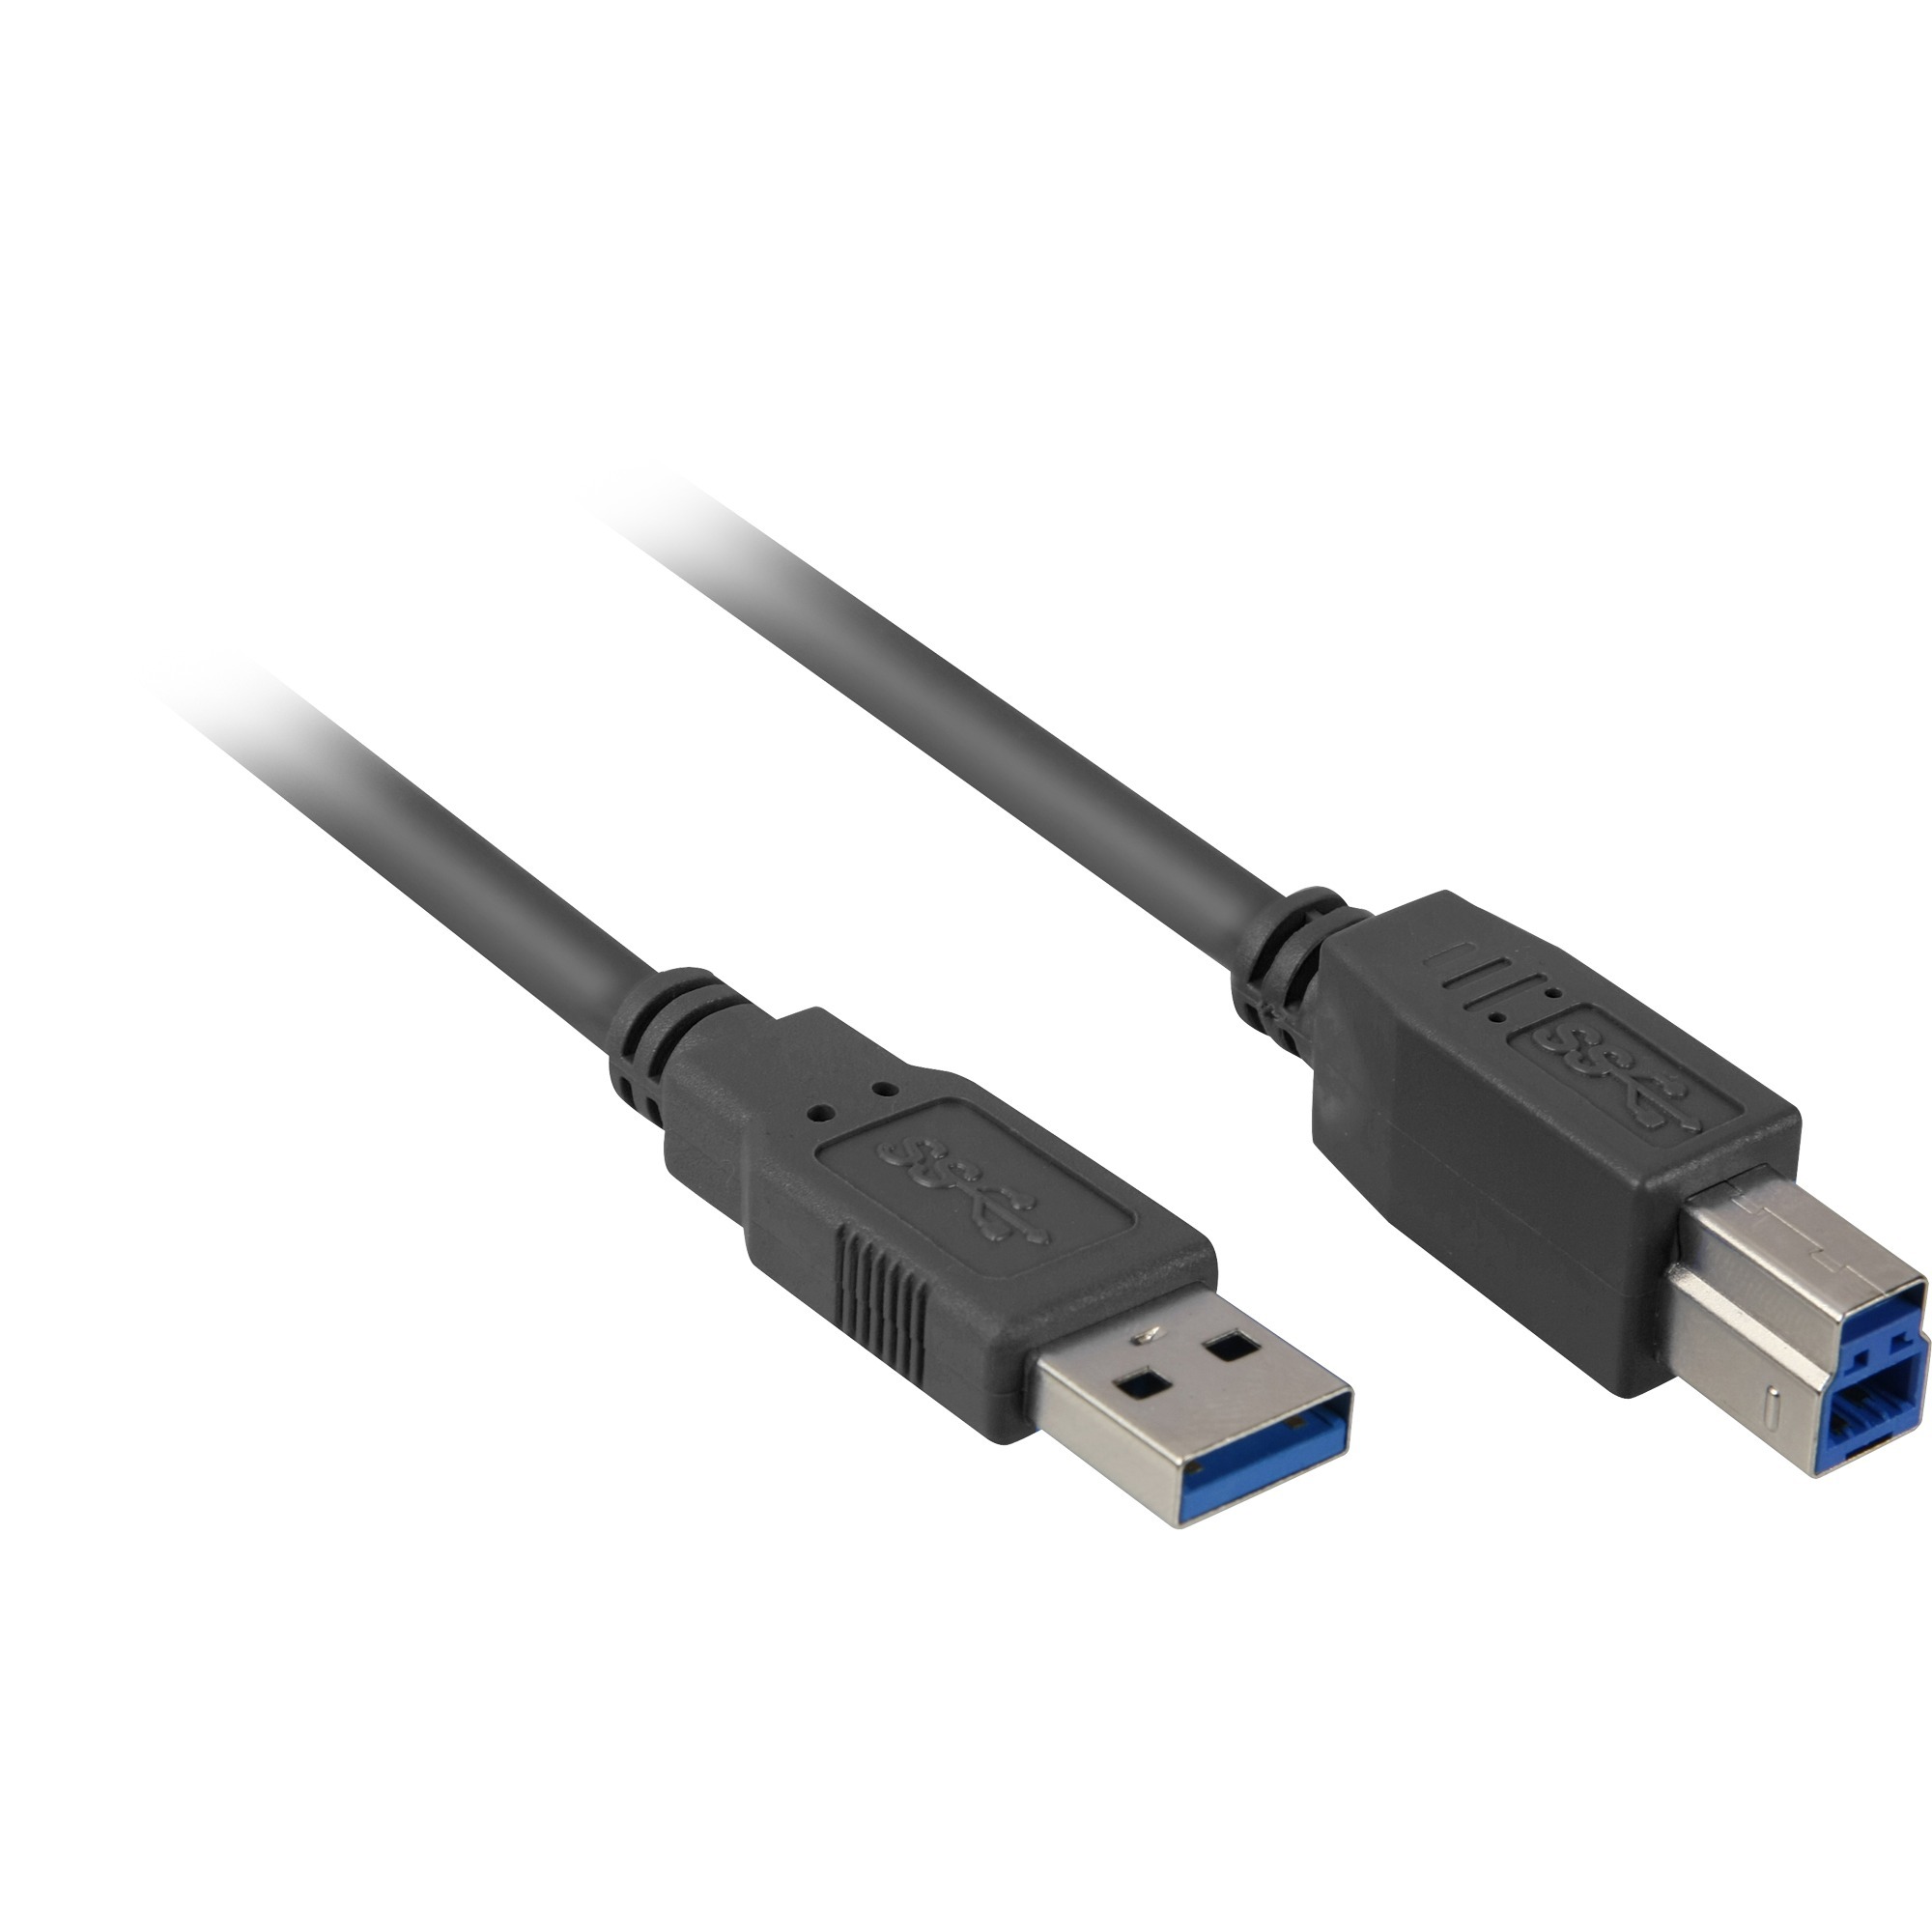 Image of Alternate - Kabel USB 3.0 Stecker A - Stecker B online einkaufen bei Alternate